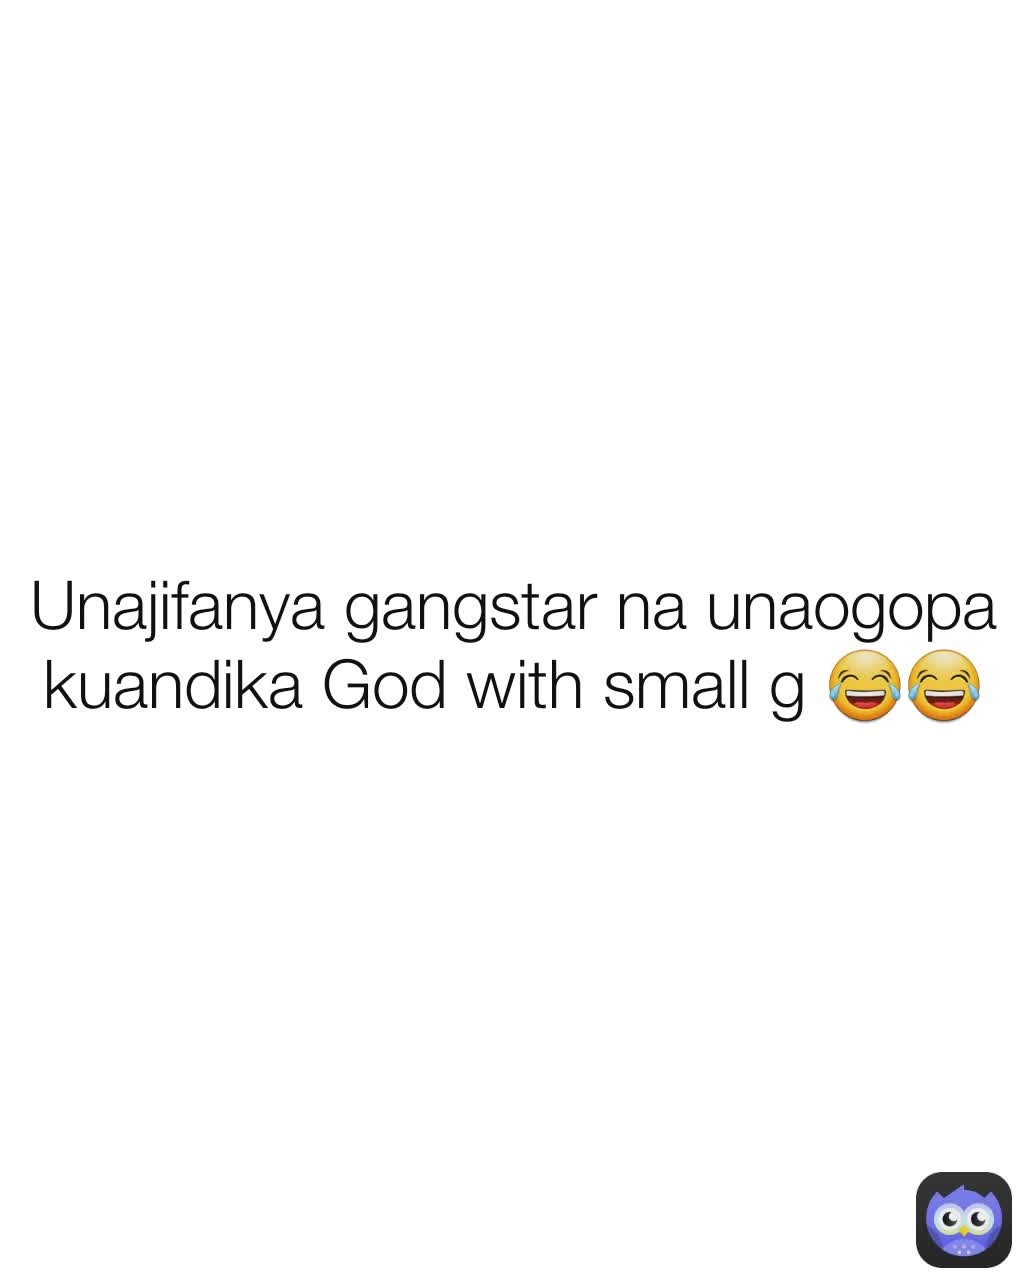 Unajifanya gangstar na unaogopa kuandika God with small g 😂😂